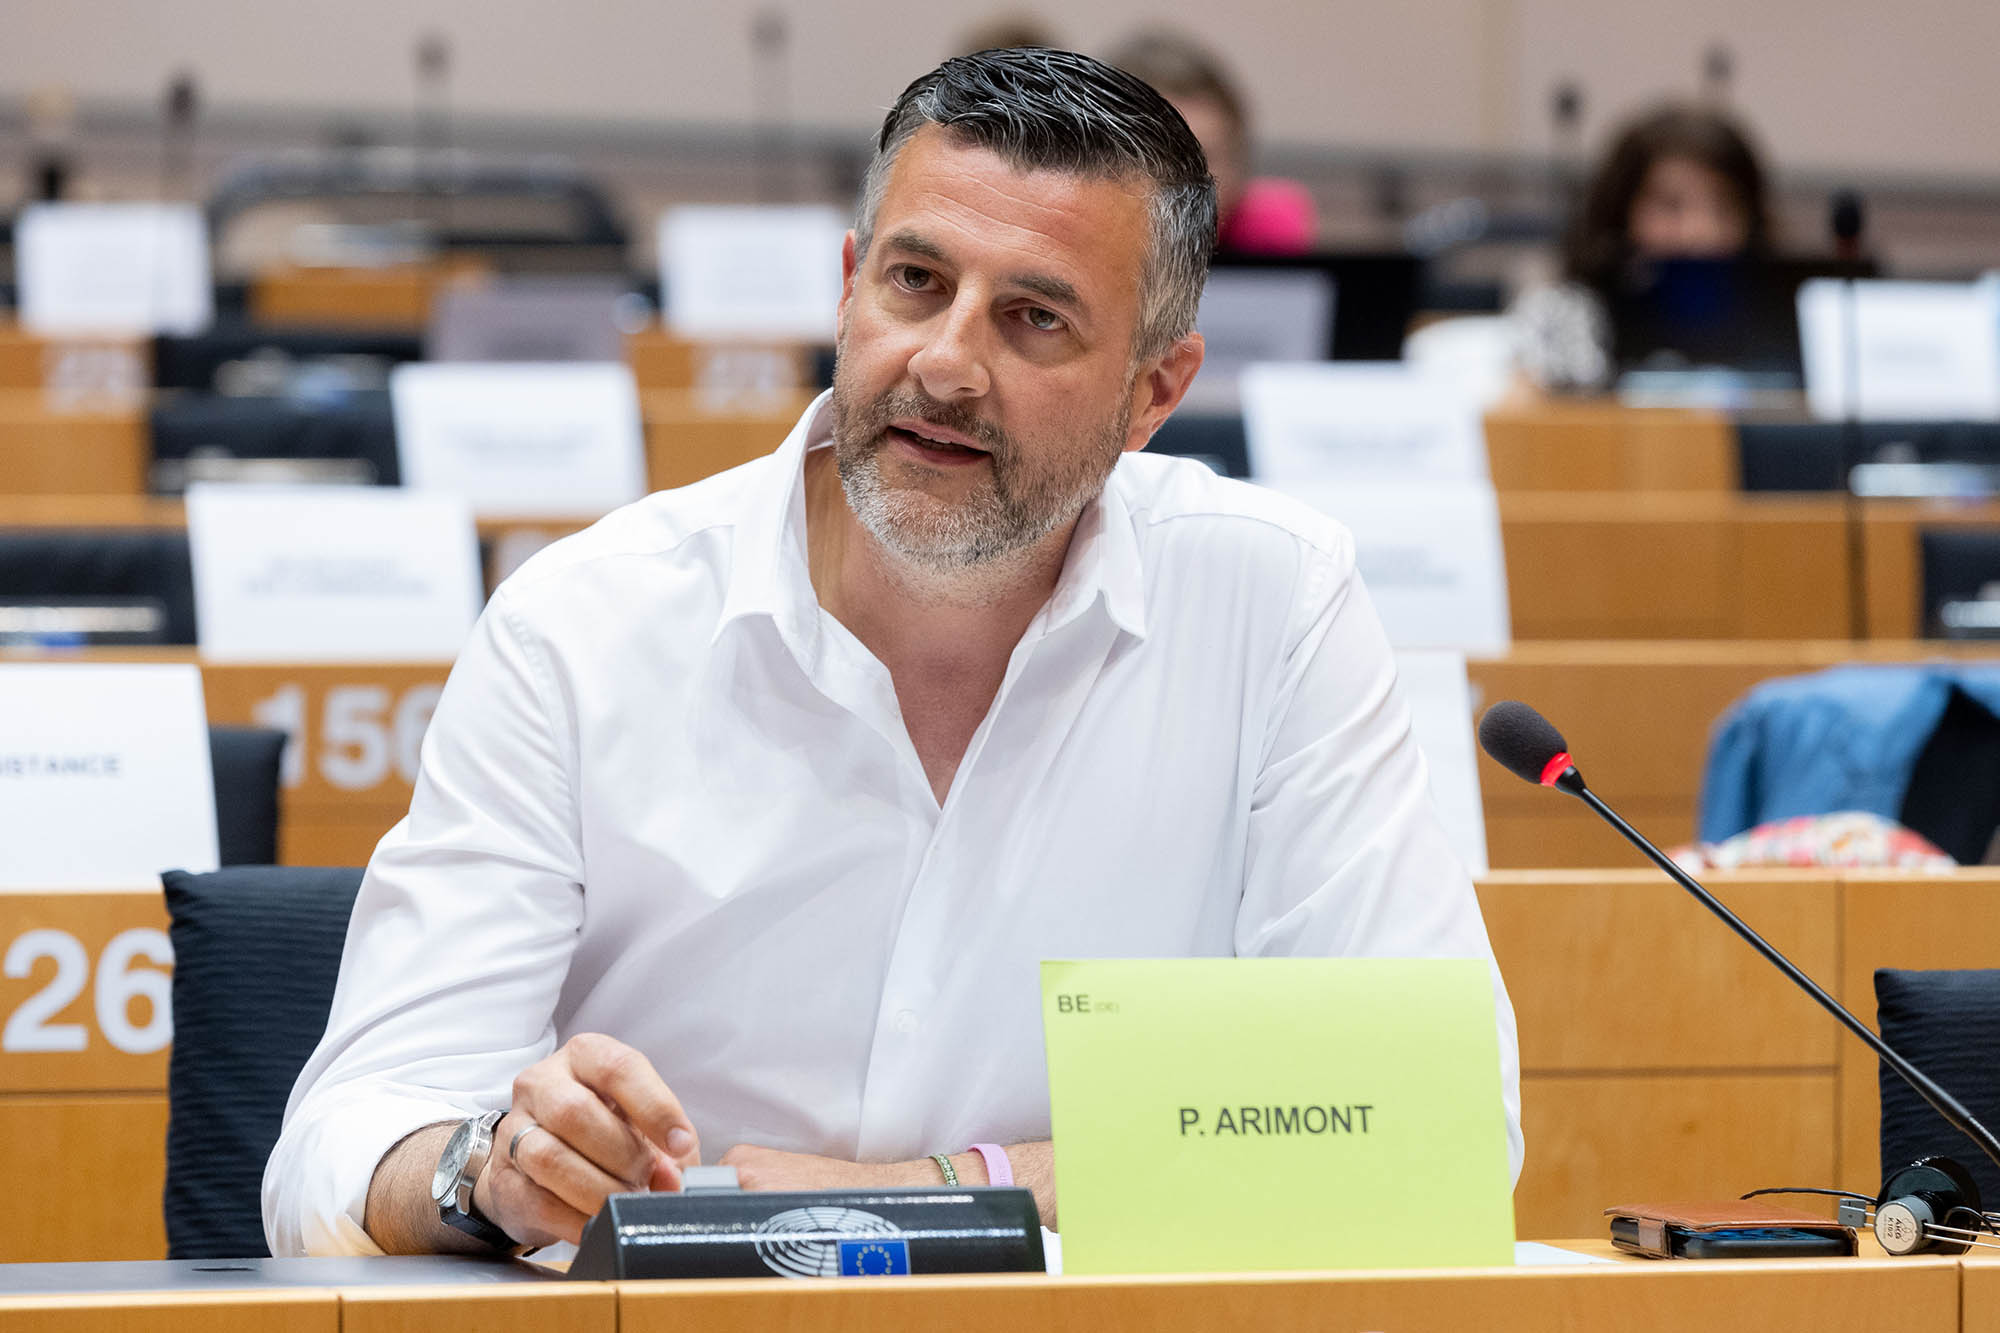 Pascal Arimont im Ausschuss für regionale Politik des EU-Parlaments